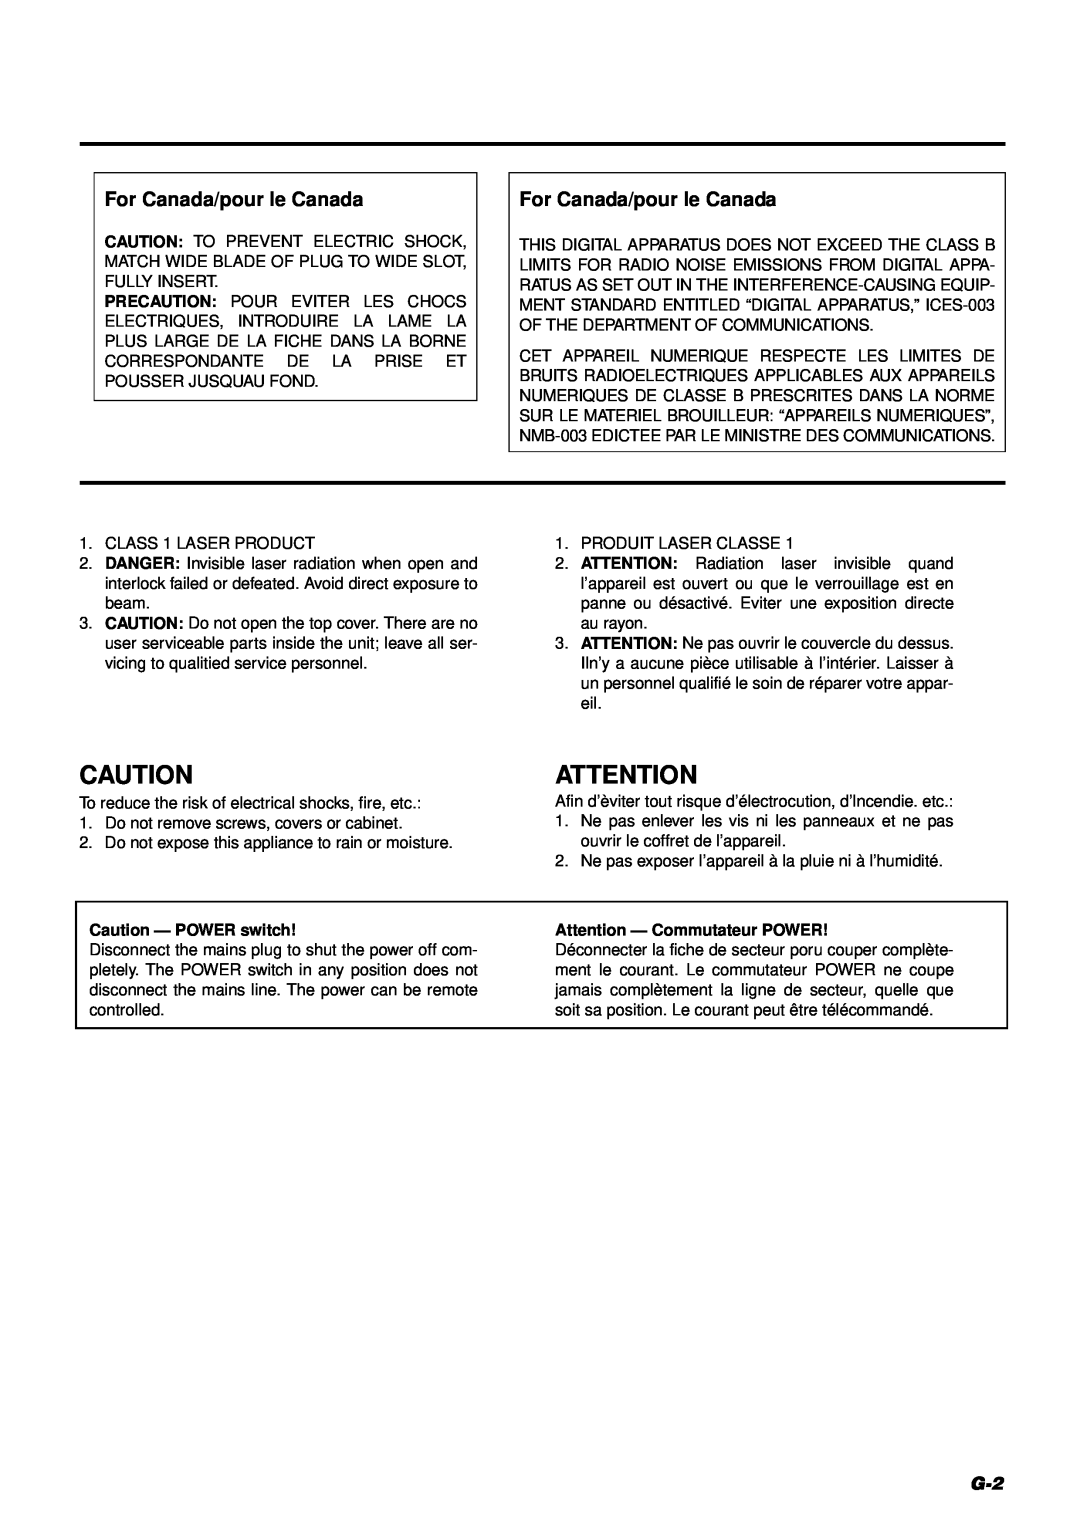 JVC FS-8000 manual Caution - POWER switch, Attention - Commutateur POWER, For Canada/pour le Canada 